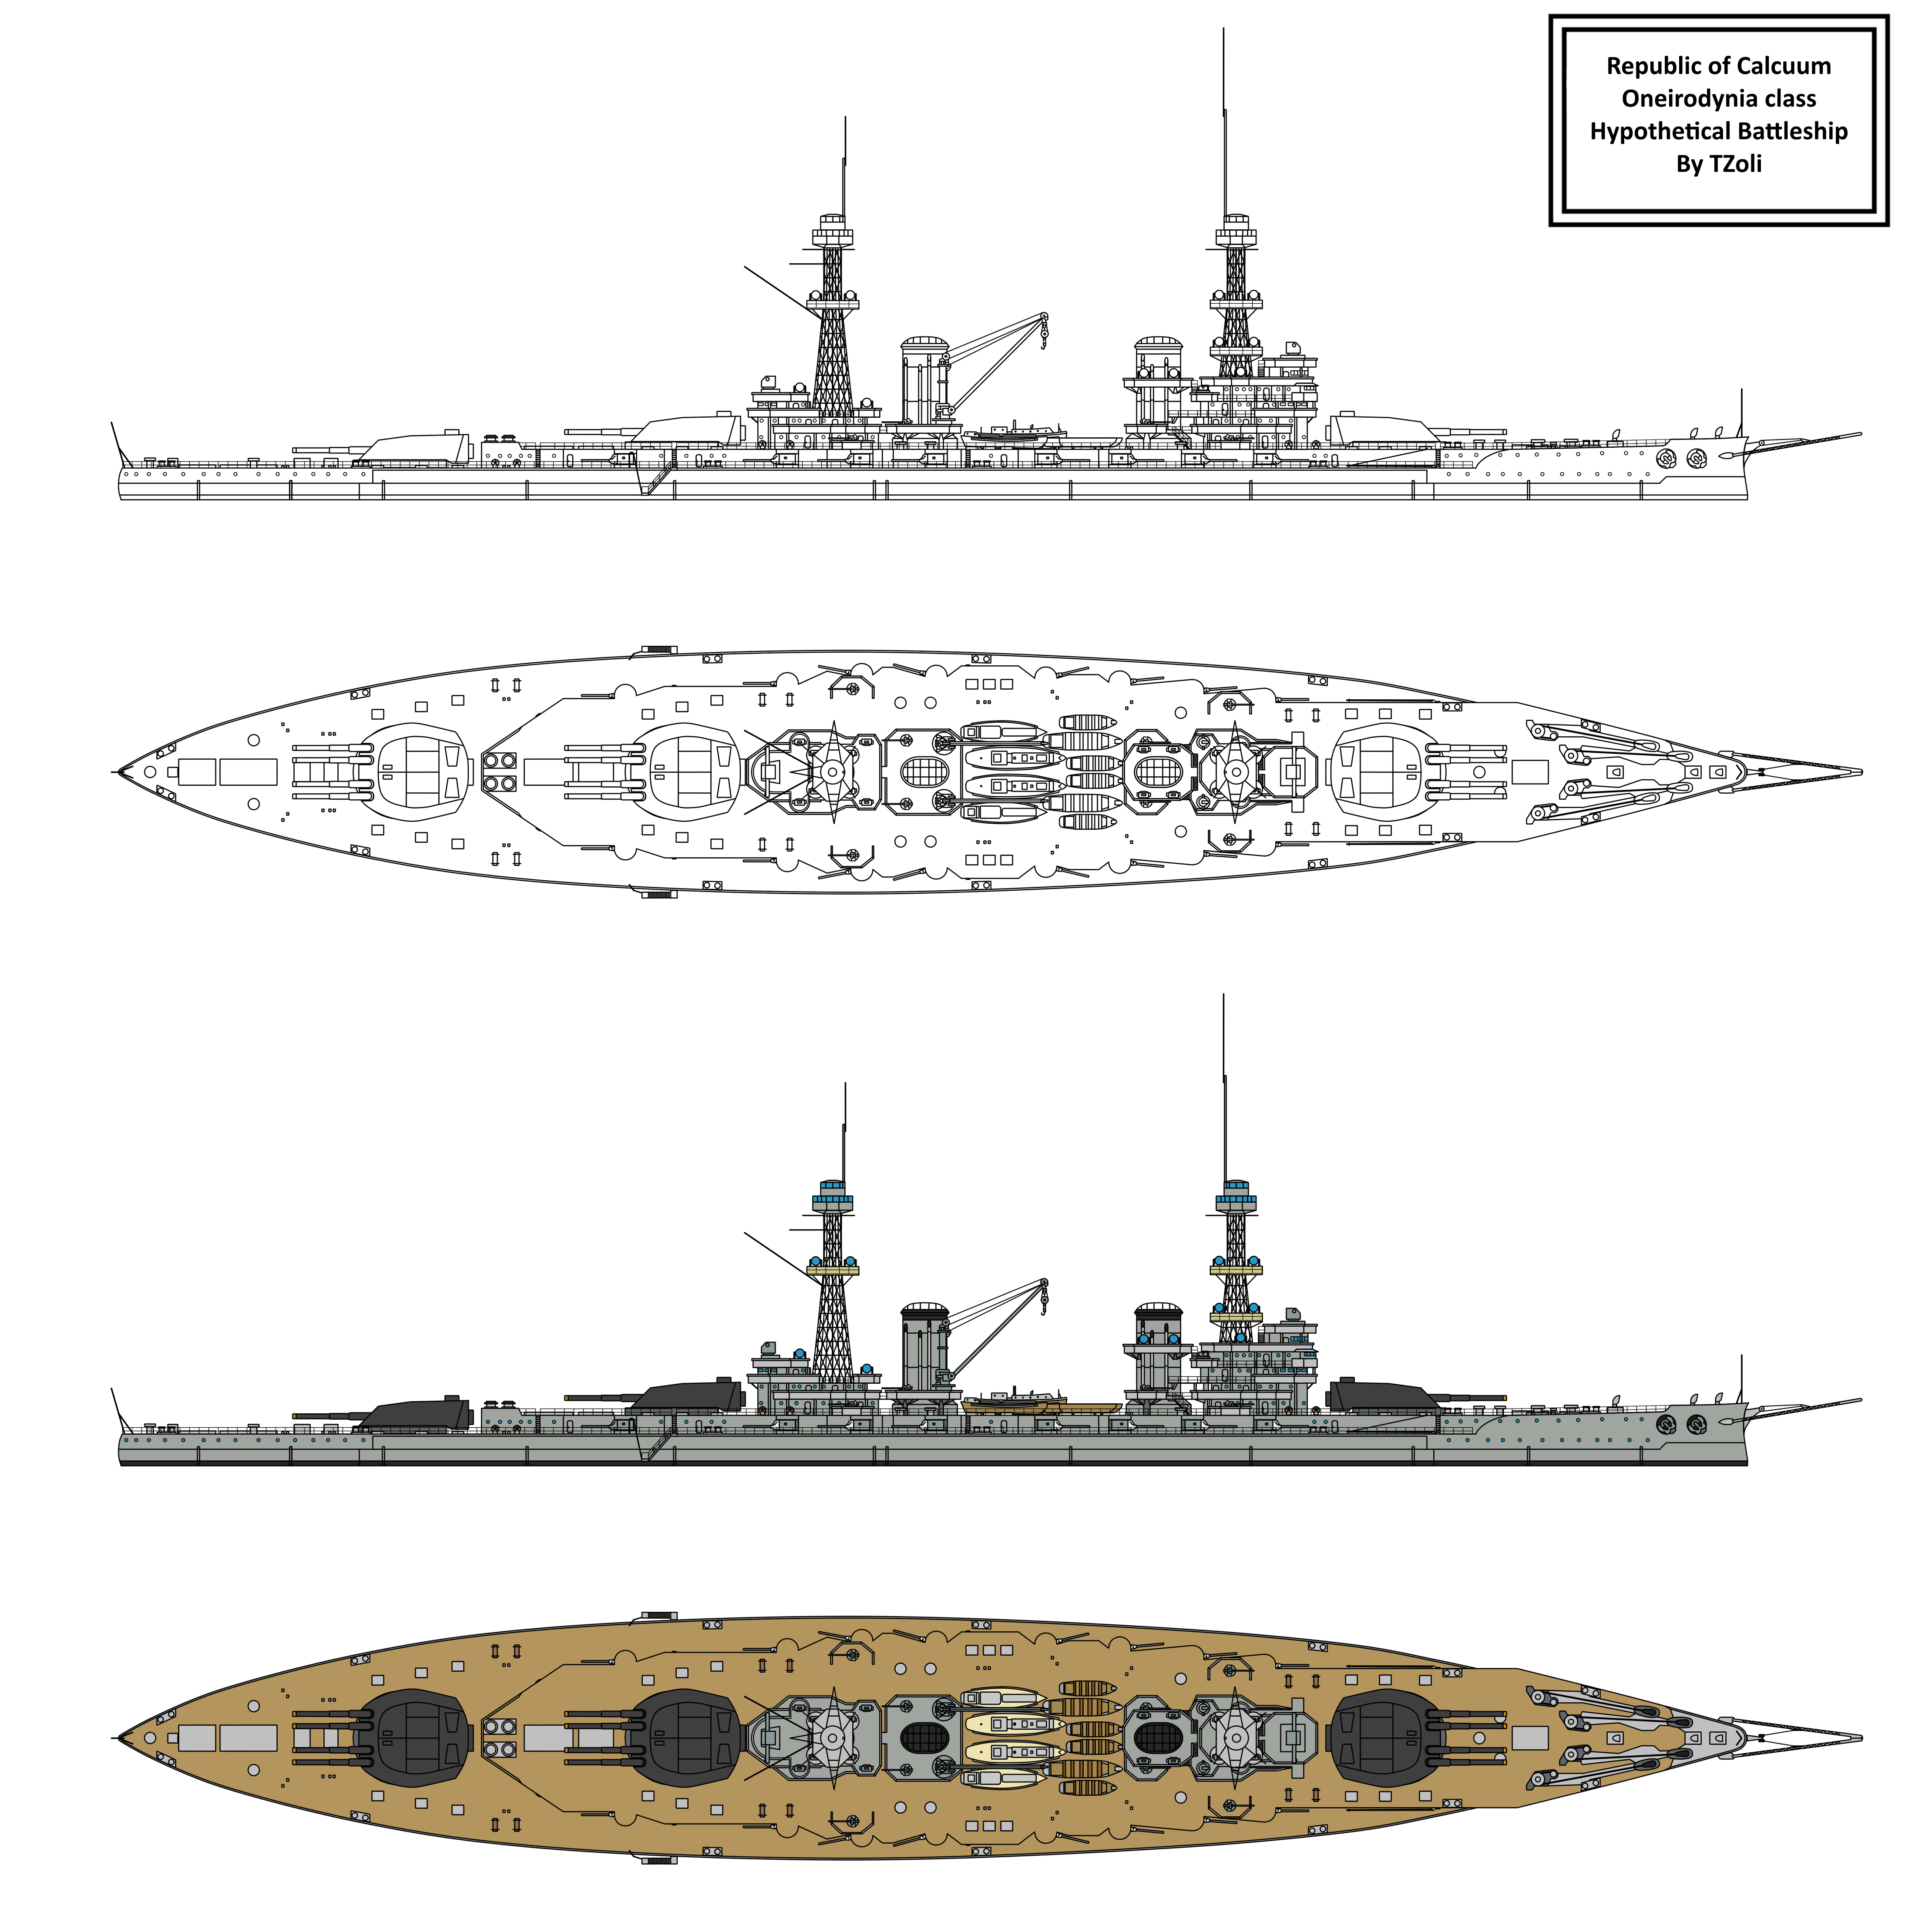 oneirodynia_class_battleship_by_tzoli-d9vcl0y.png